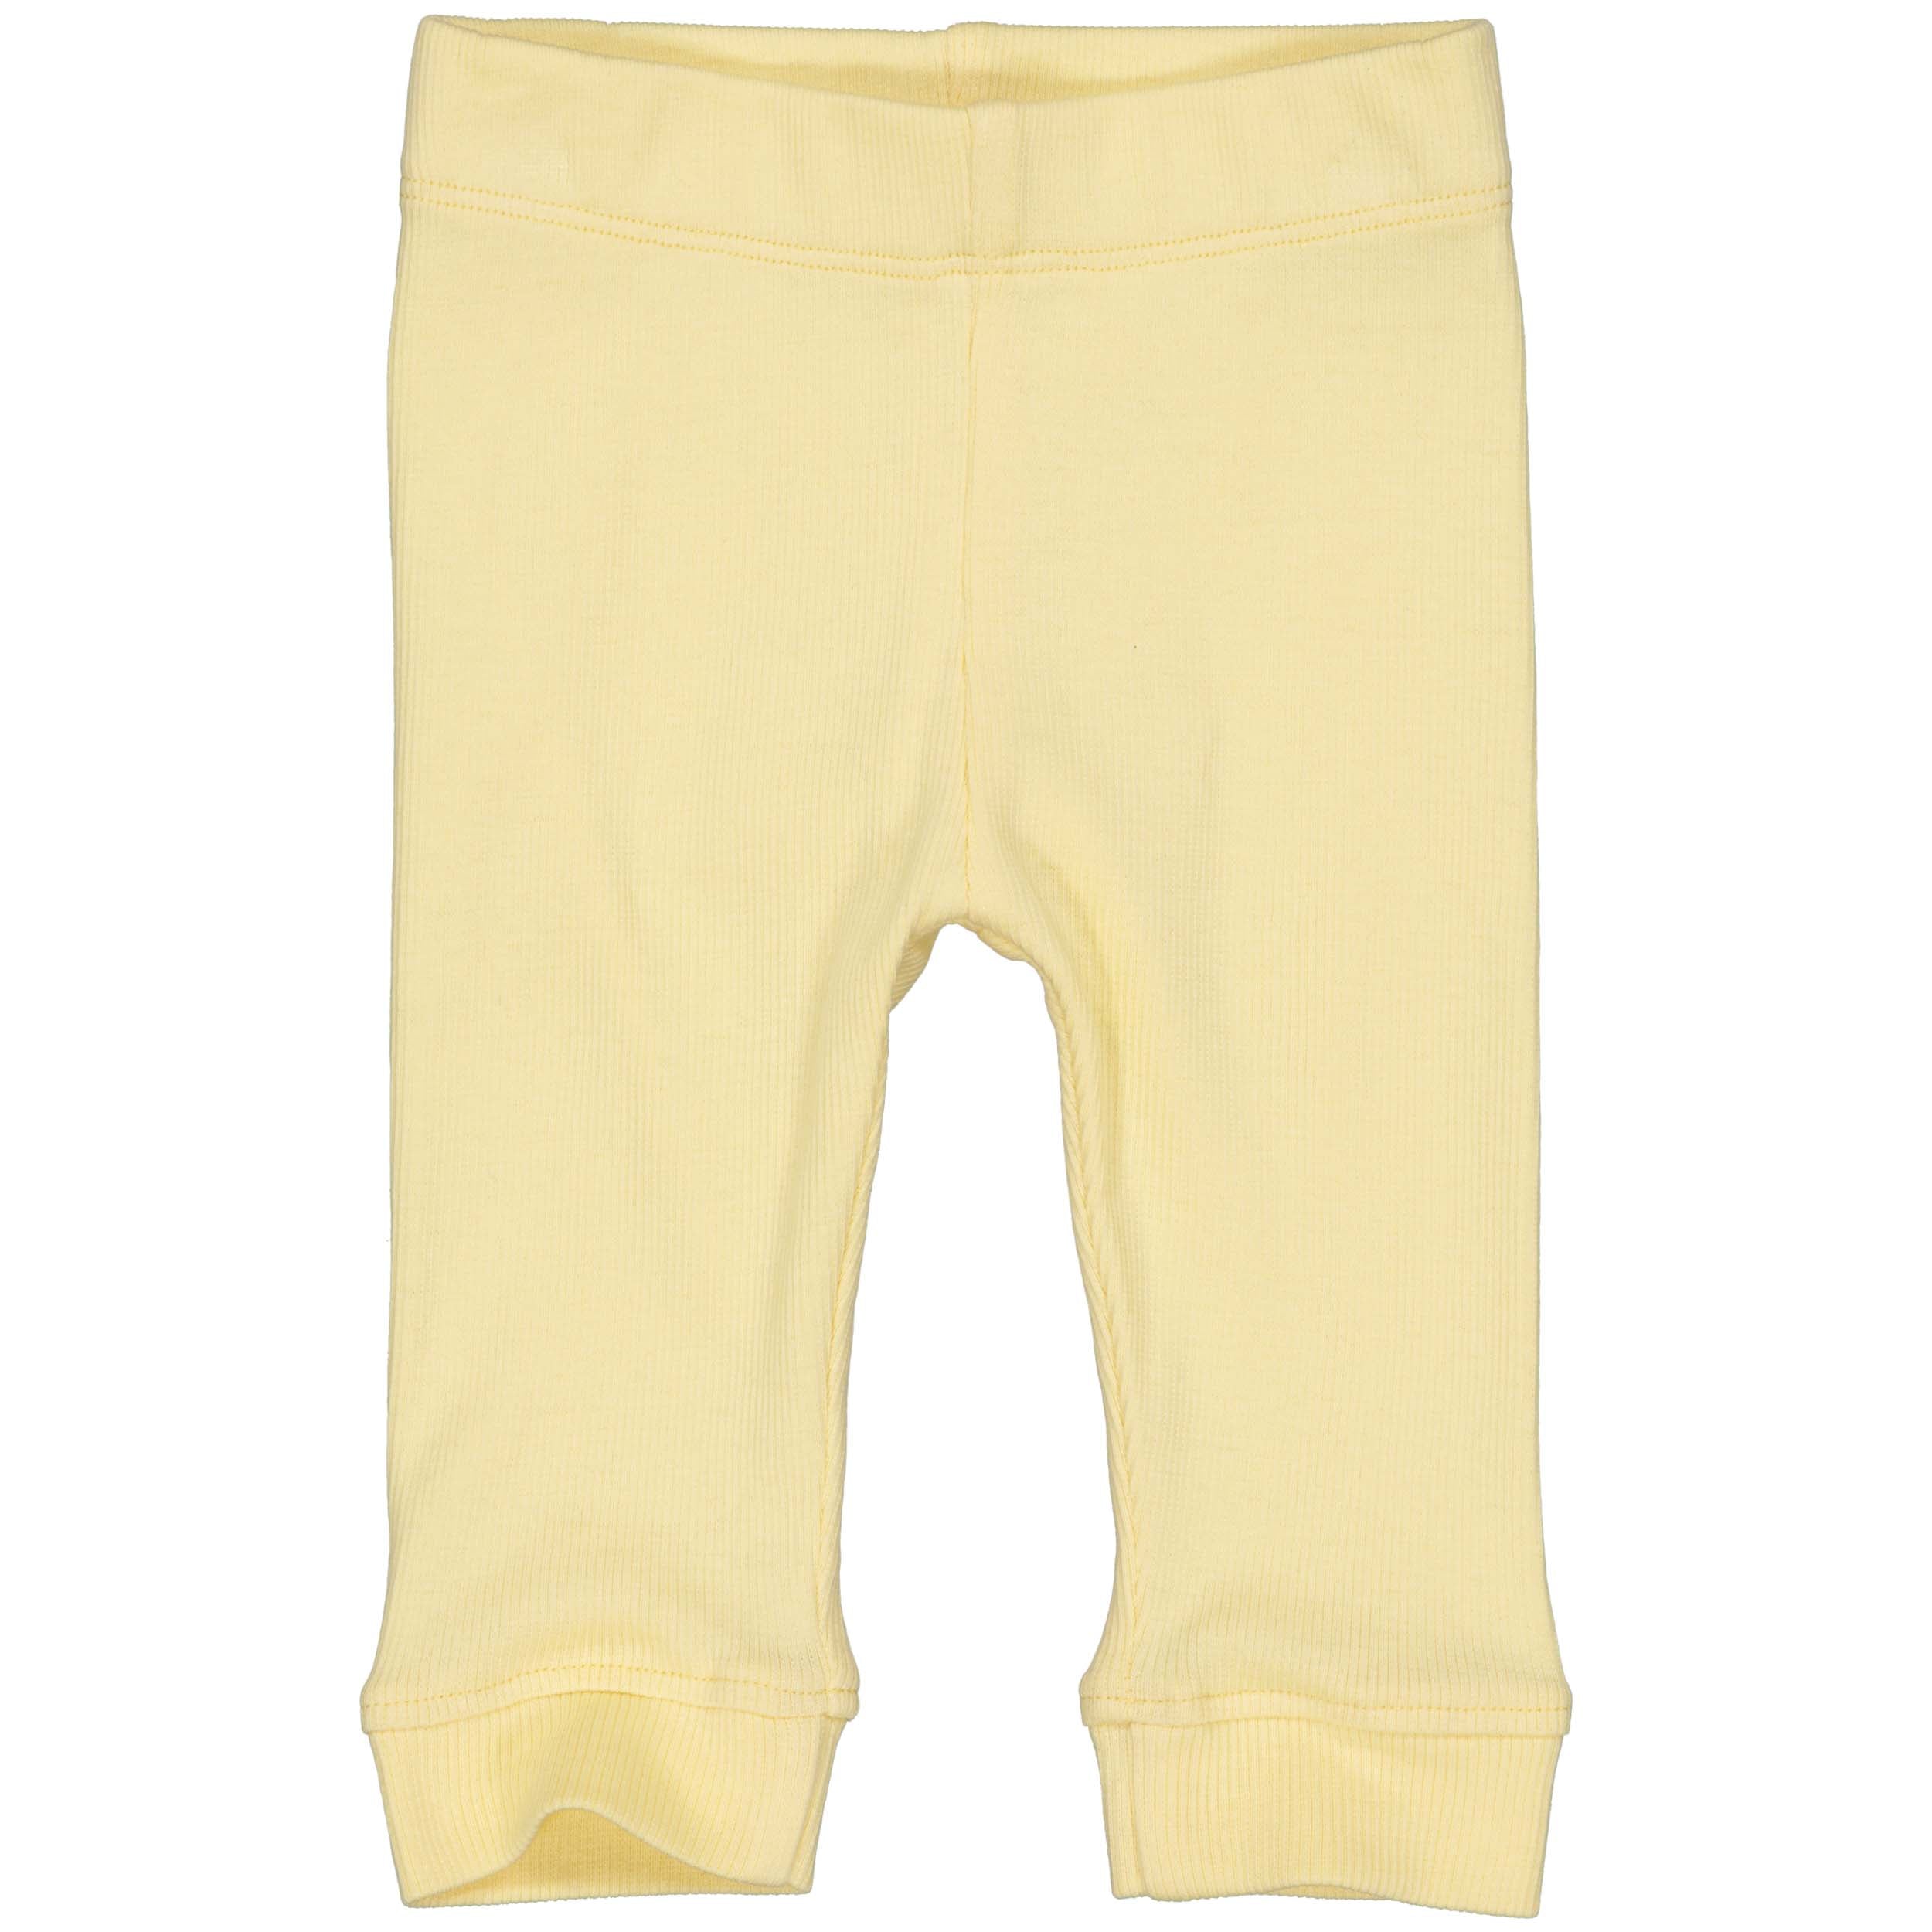 Meisjes Pants Sena van Quapi Newborn in de kleur Yellow Cream in maat 68.